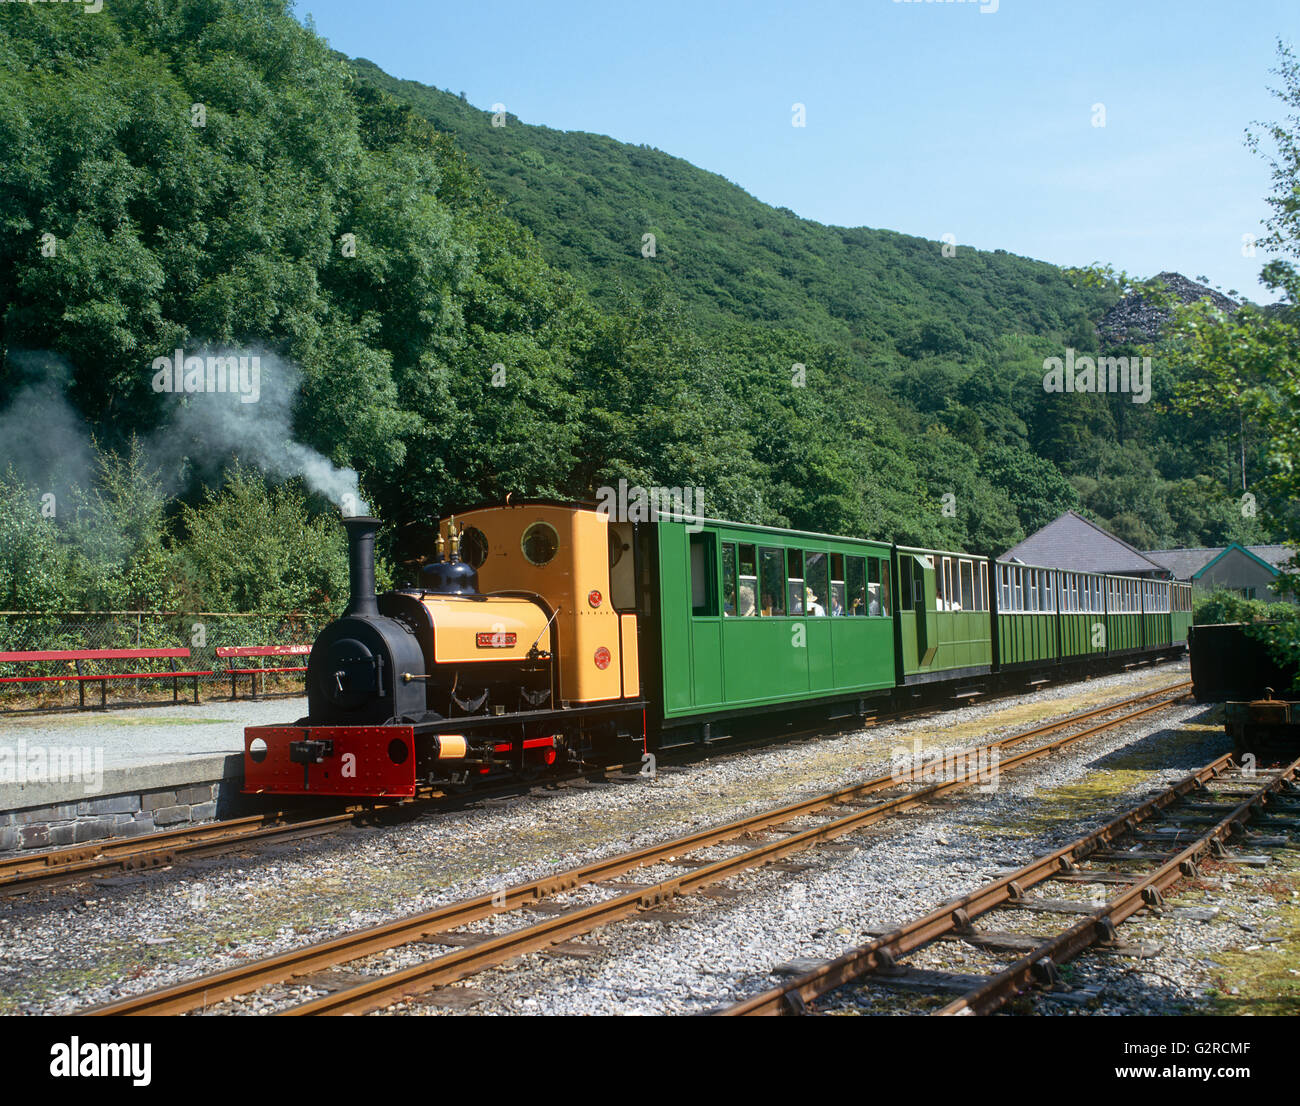 Eine grüne und gelbe Dampfzug auf den Gleisen außerhalb. Stockfoto